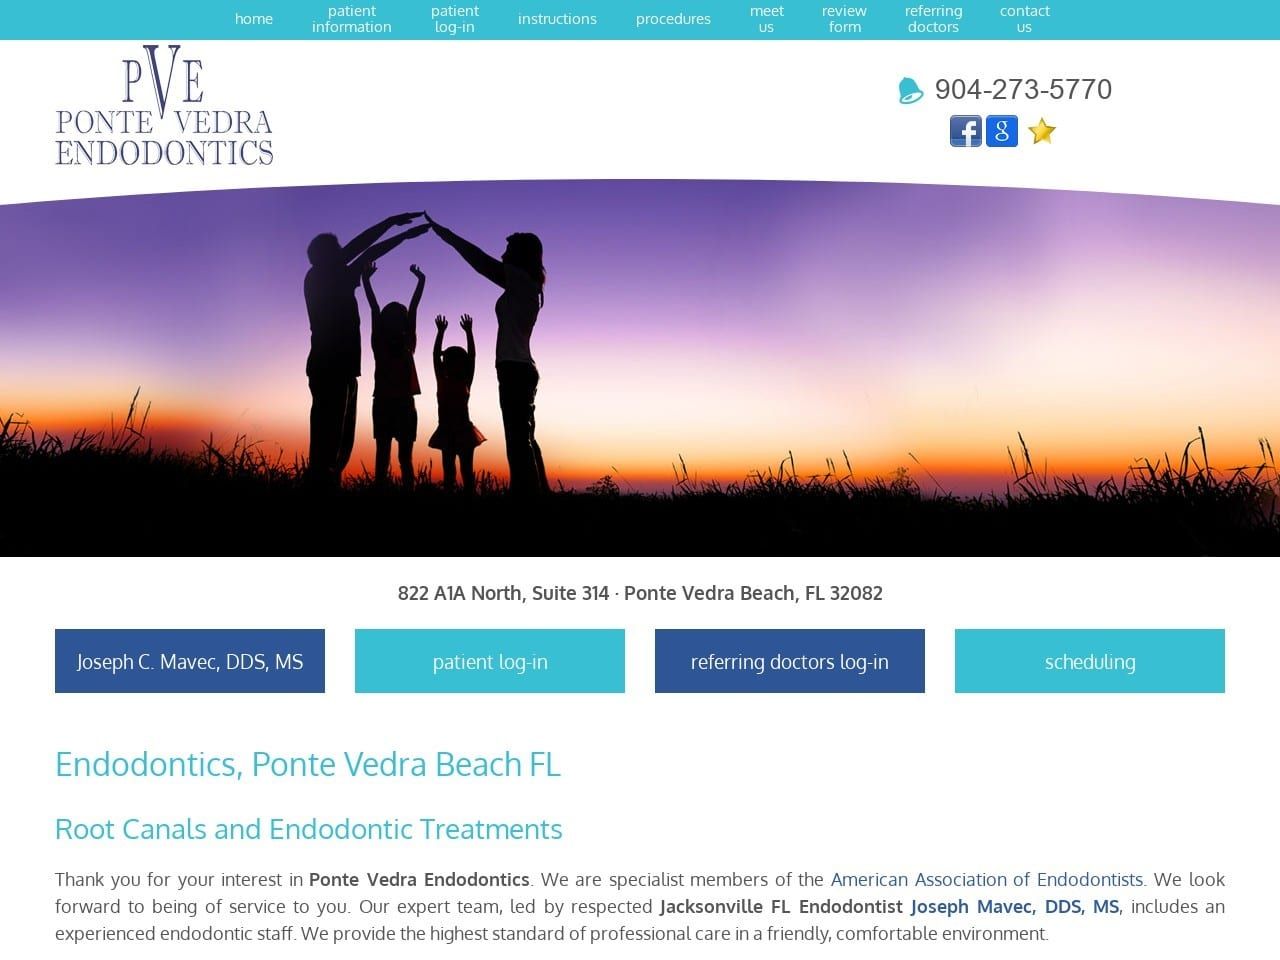 Ponte Vedra Endodontics Website Screenshot from pv-endo.com